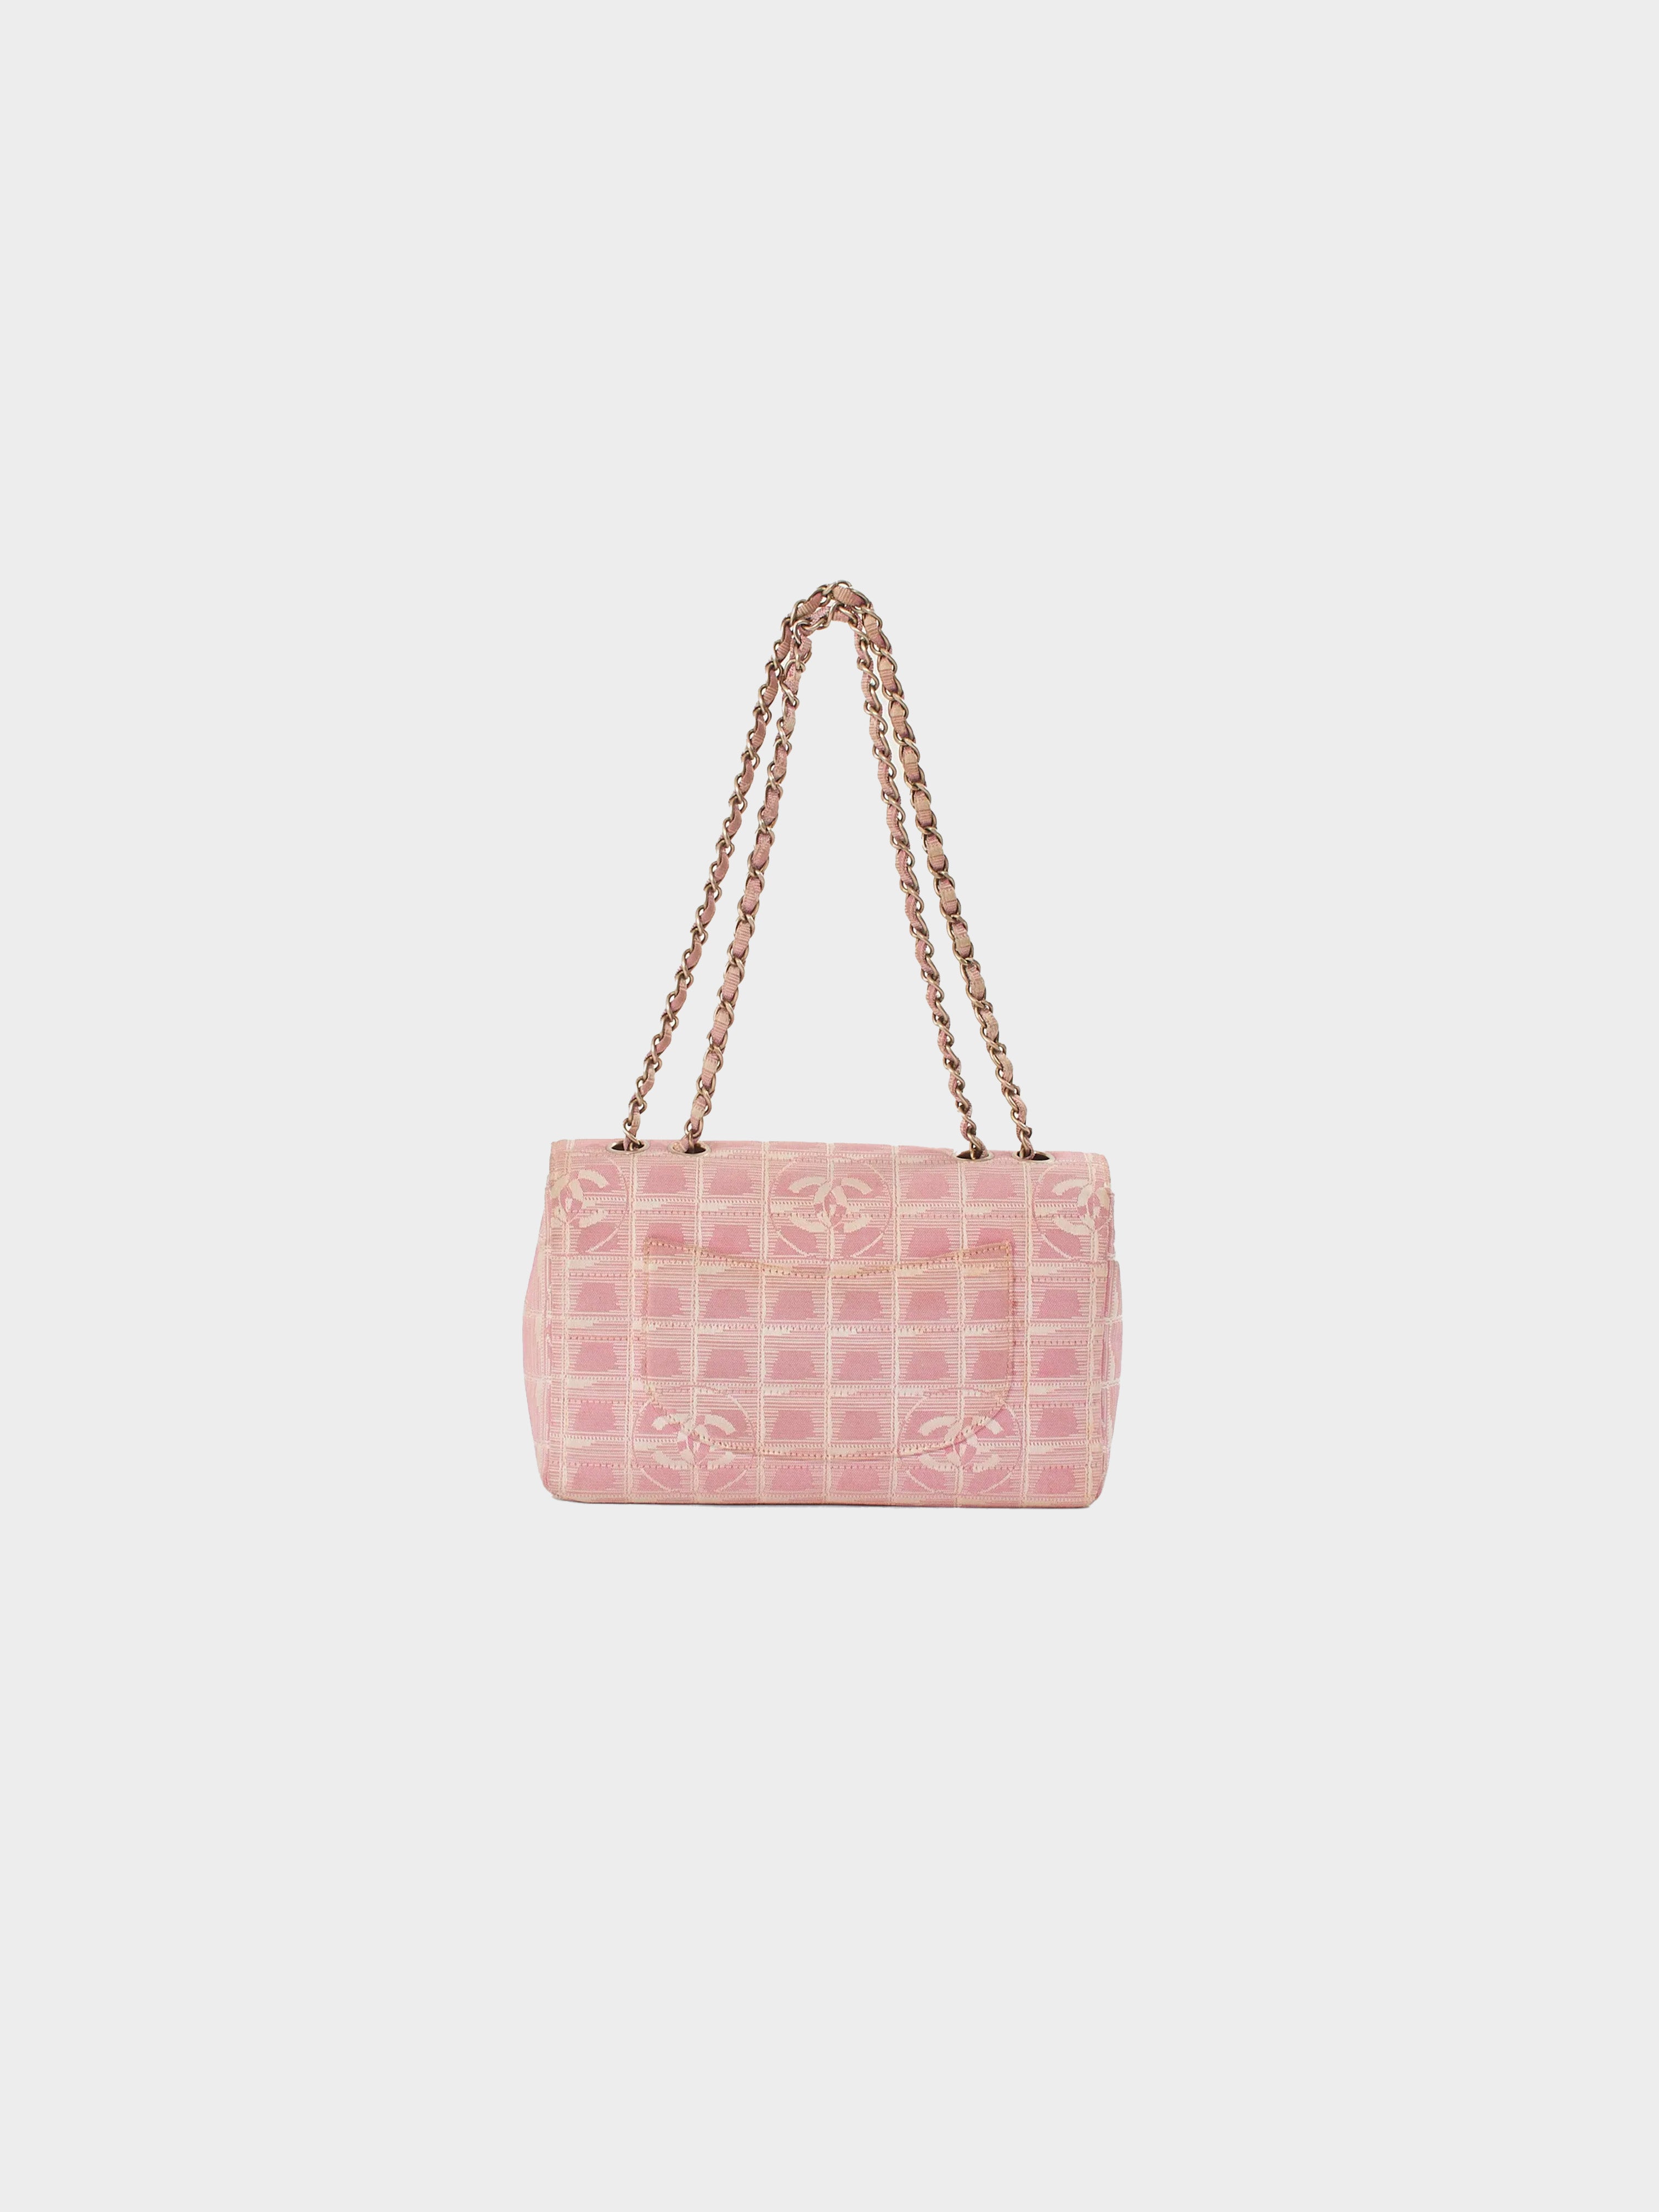 Chanel 2001 Travel Linge Pink Flap Bag · INTO